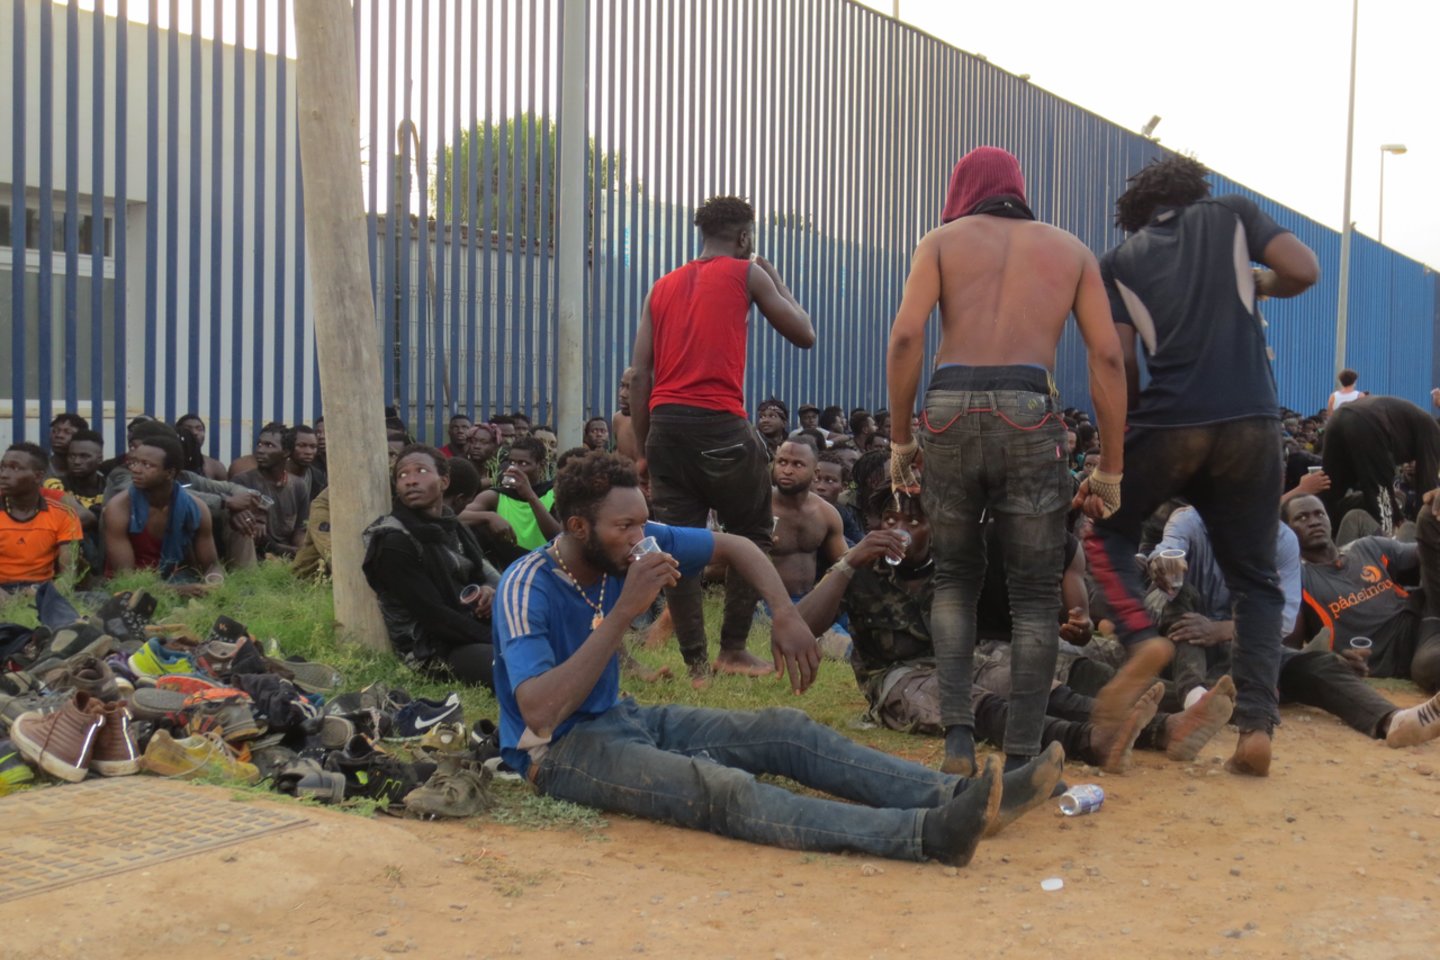 Apie 350 migrantų mėgino patekti į Melilją, Ispanijos anklavą Šiaurės Afrikoje, bet ne vienas jų nesugebėjo prasiveržti per teritoriją juosiančias tvoras.<br>ZUMAPRESS.com/Scanpix nuotr.